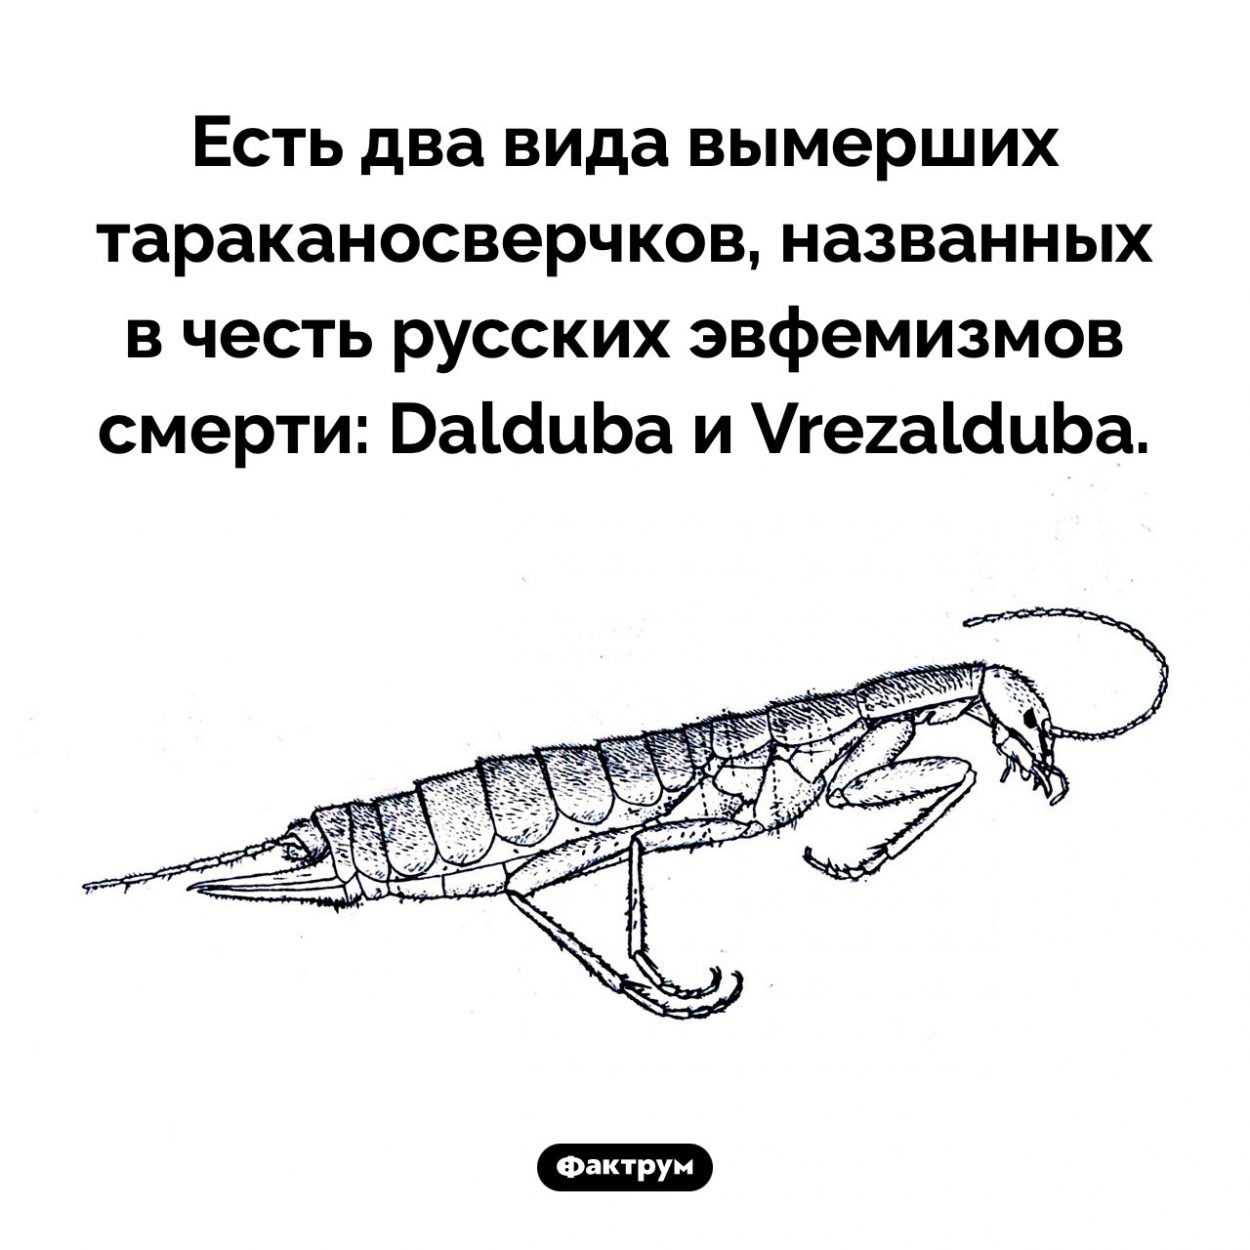 Сверчок дал дуба. Есть два вида вымерших тараканосверчков, названных в честь русских эвфемизмов смерти: Dalduba и Vrezalduba.